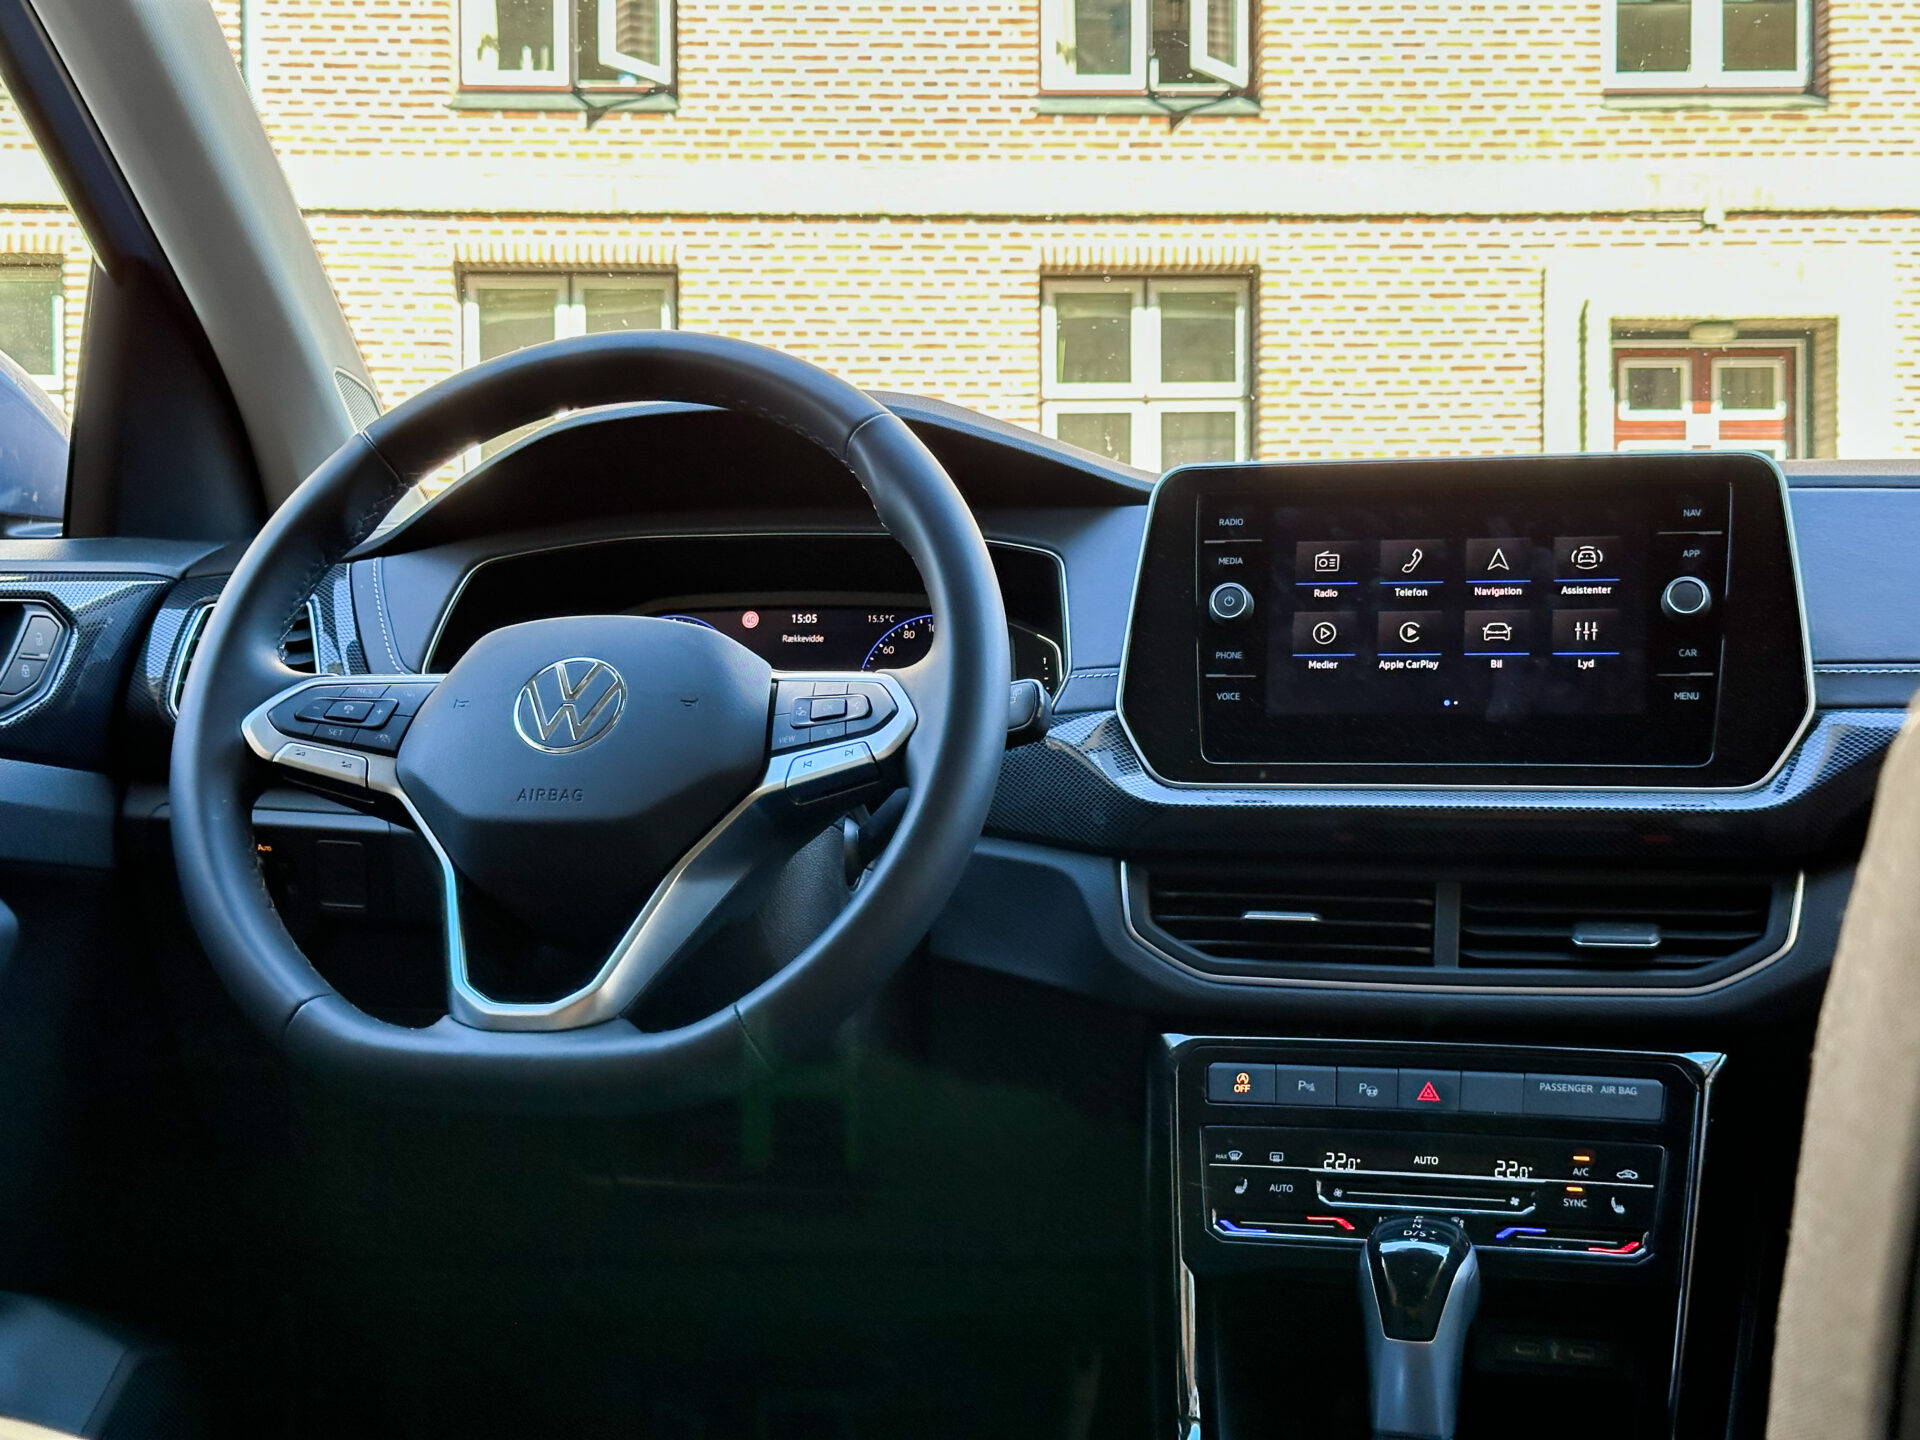 Interiör av Volkswagen med ratt och pekskärm, byggnad synlig genom fönstret.